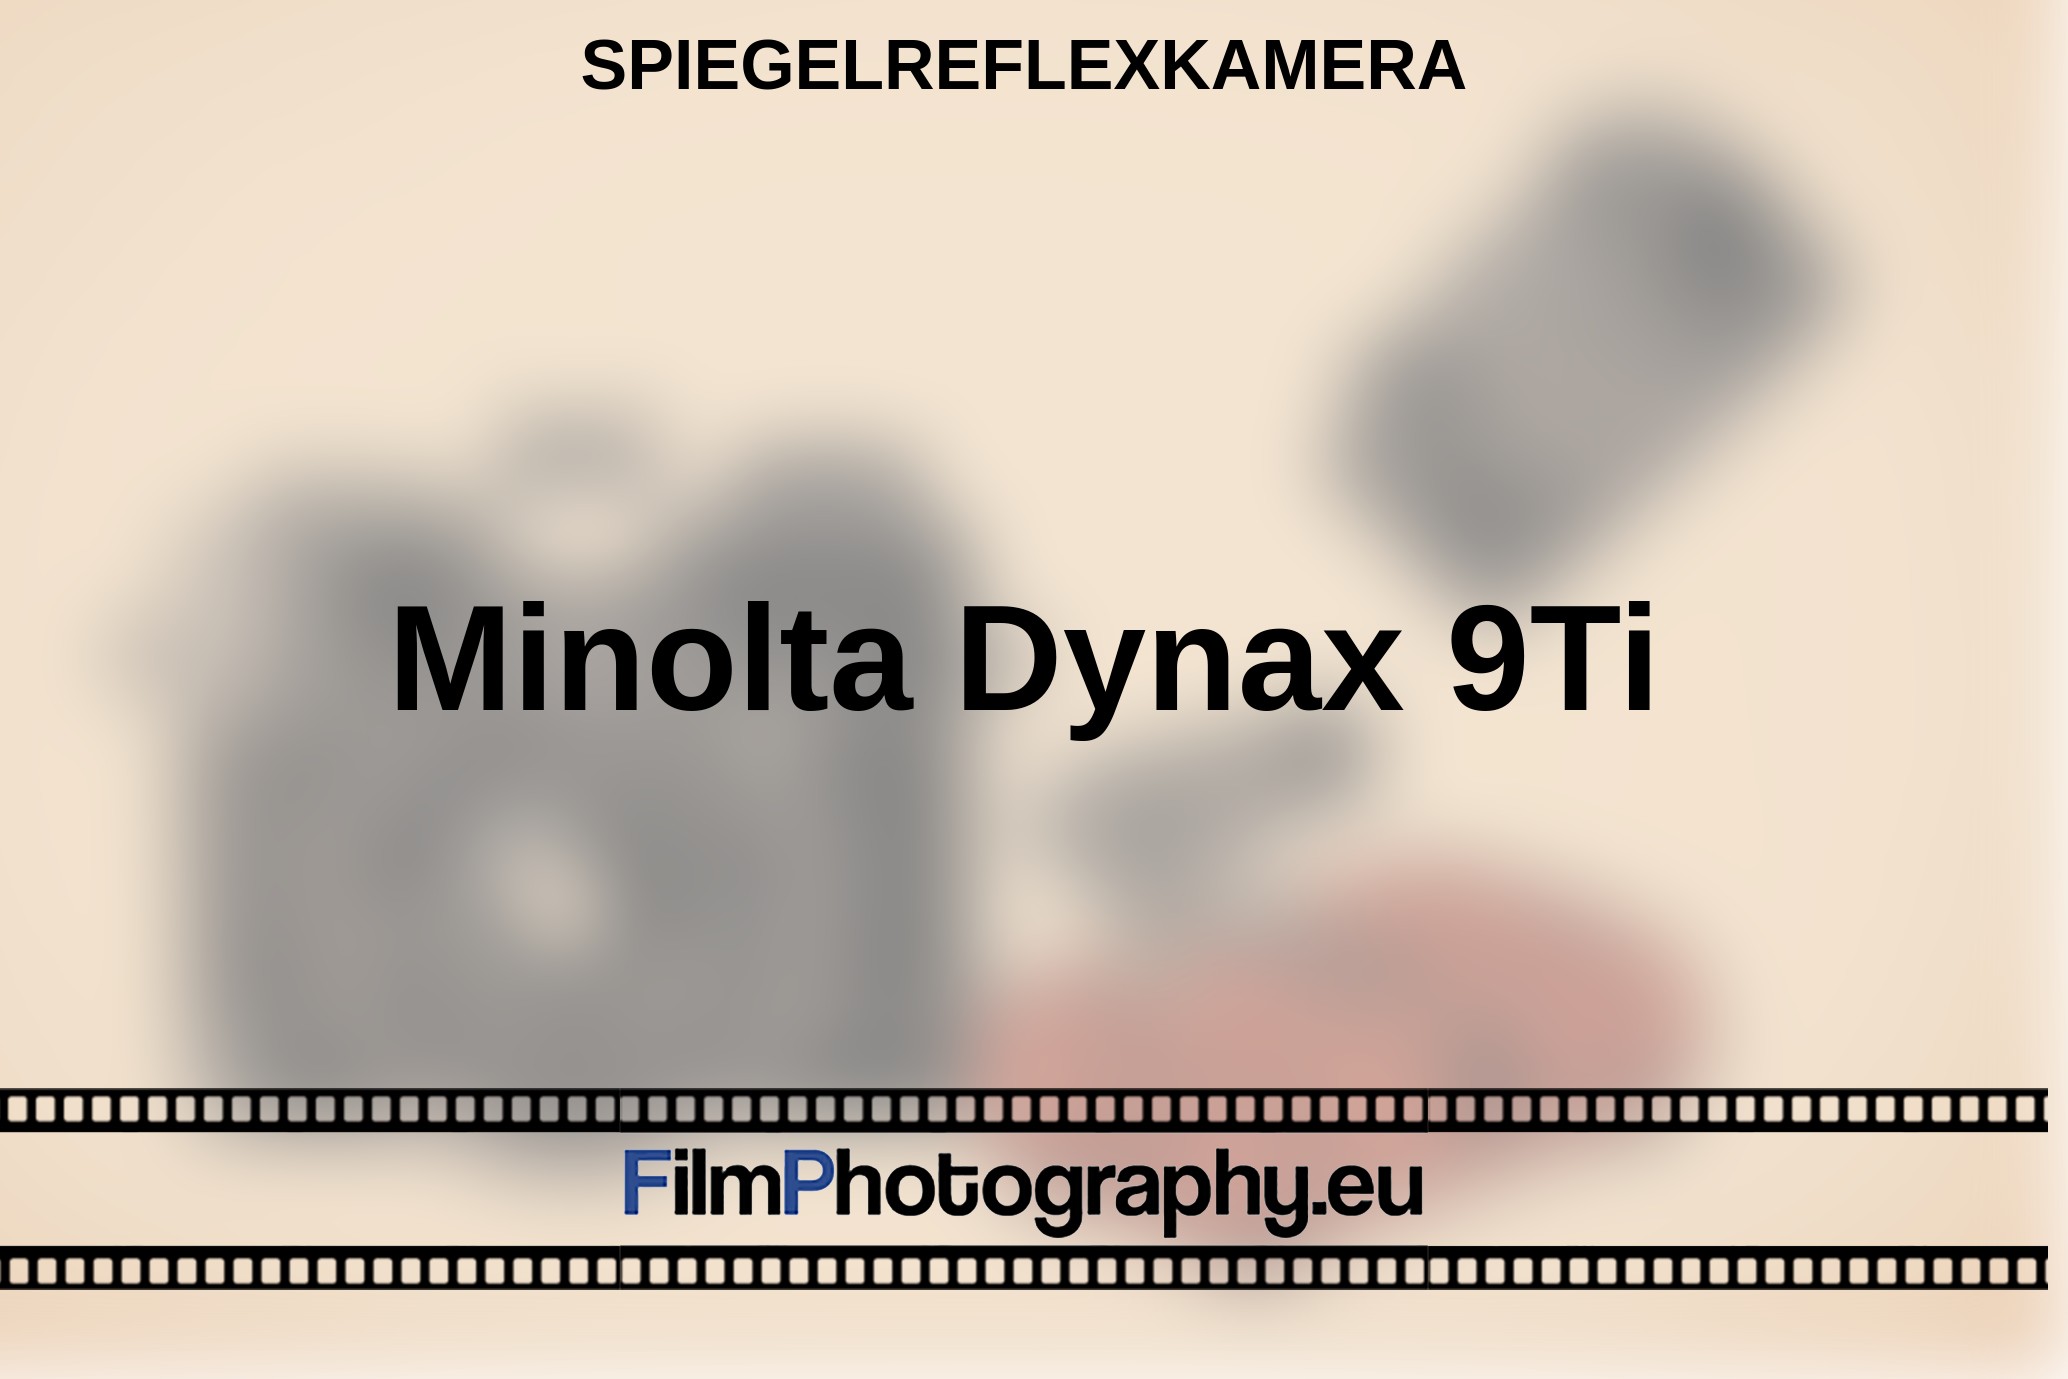 Minolta-Dynax-9Ti-Spiegelreflexkamera-bnv.jpg